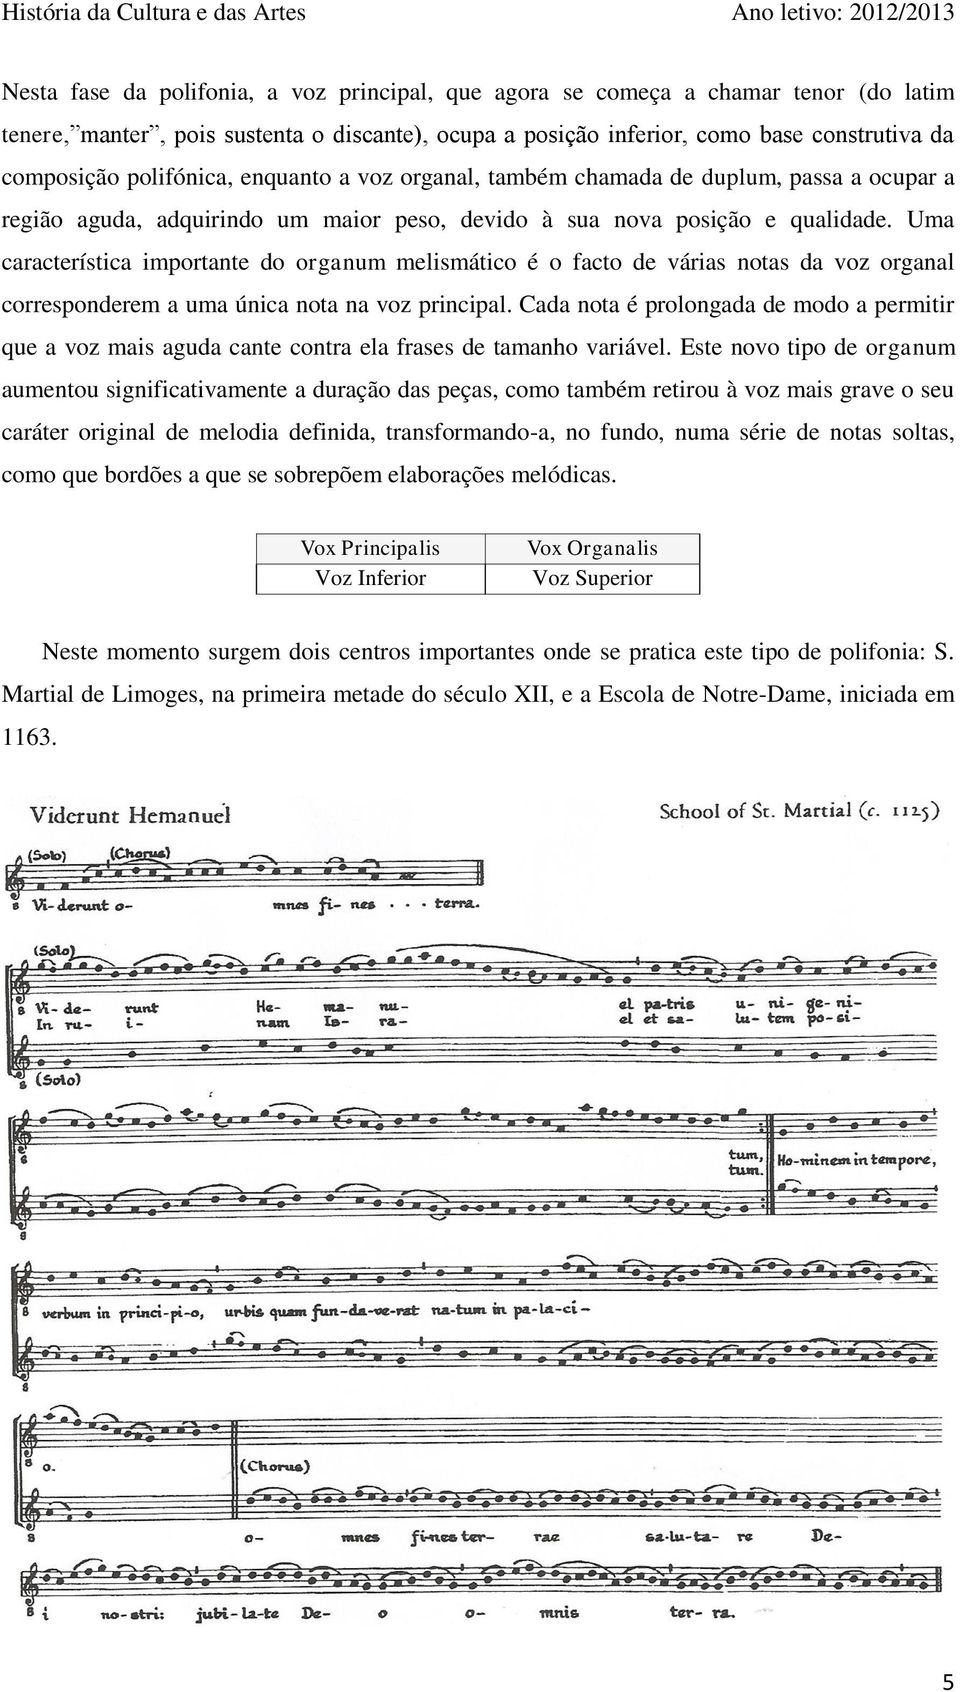 Uma característica importante do organum melismático é o facto de várias notas da voz organal corresponderem a uma única nota na voz principal.